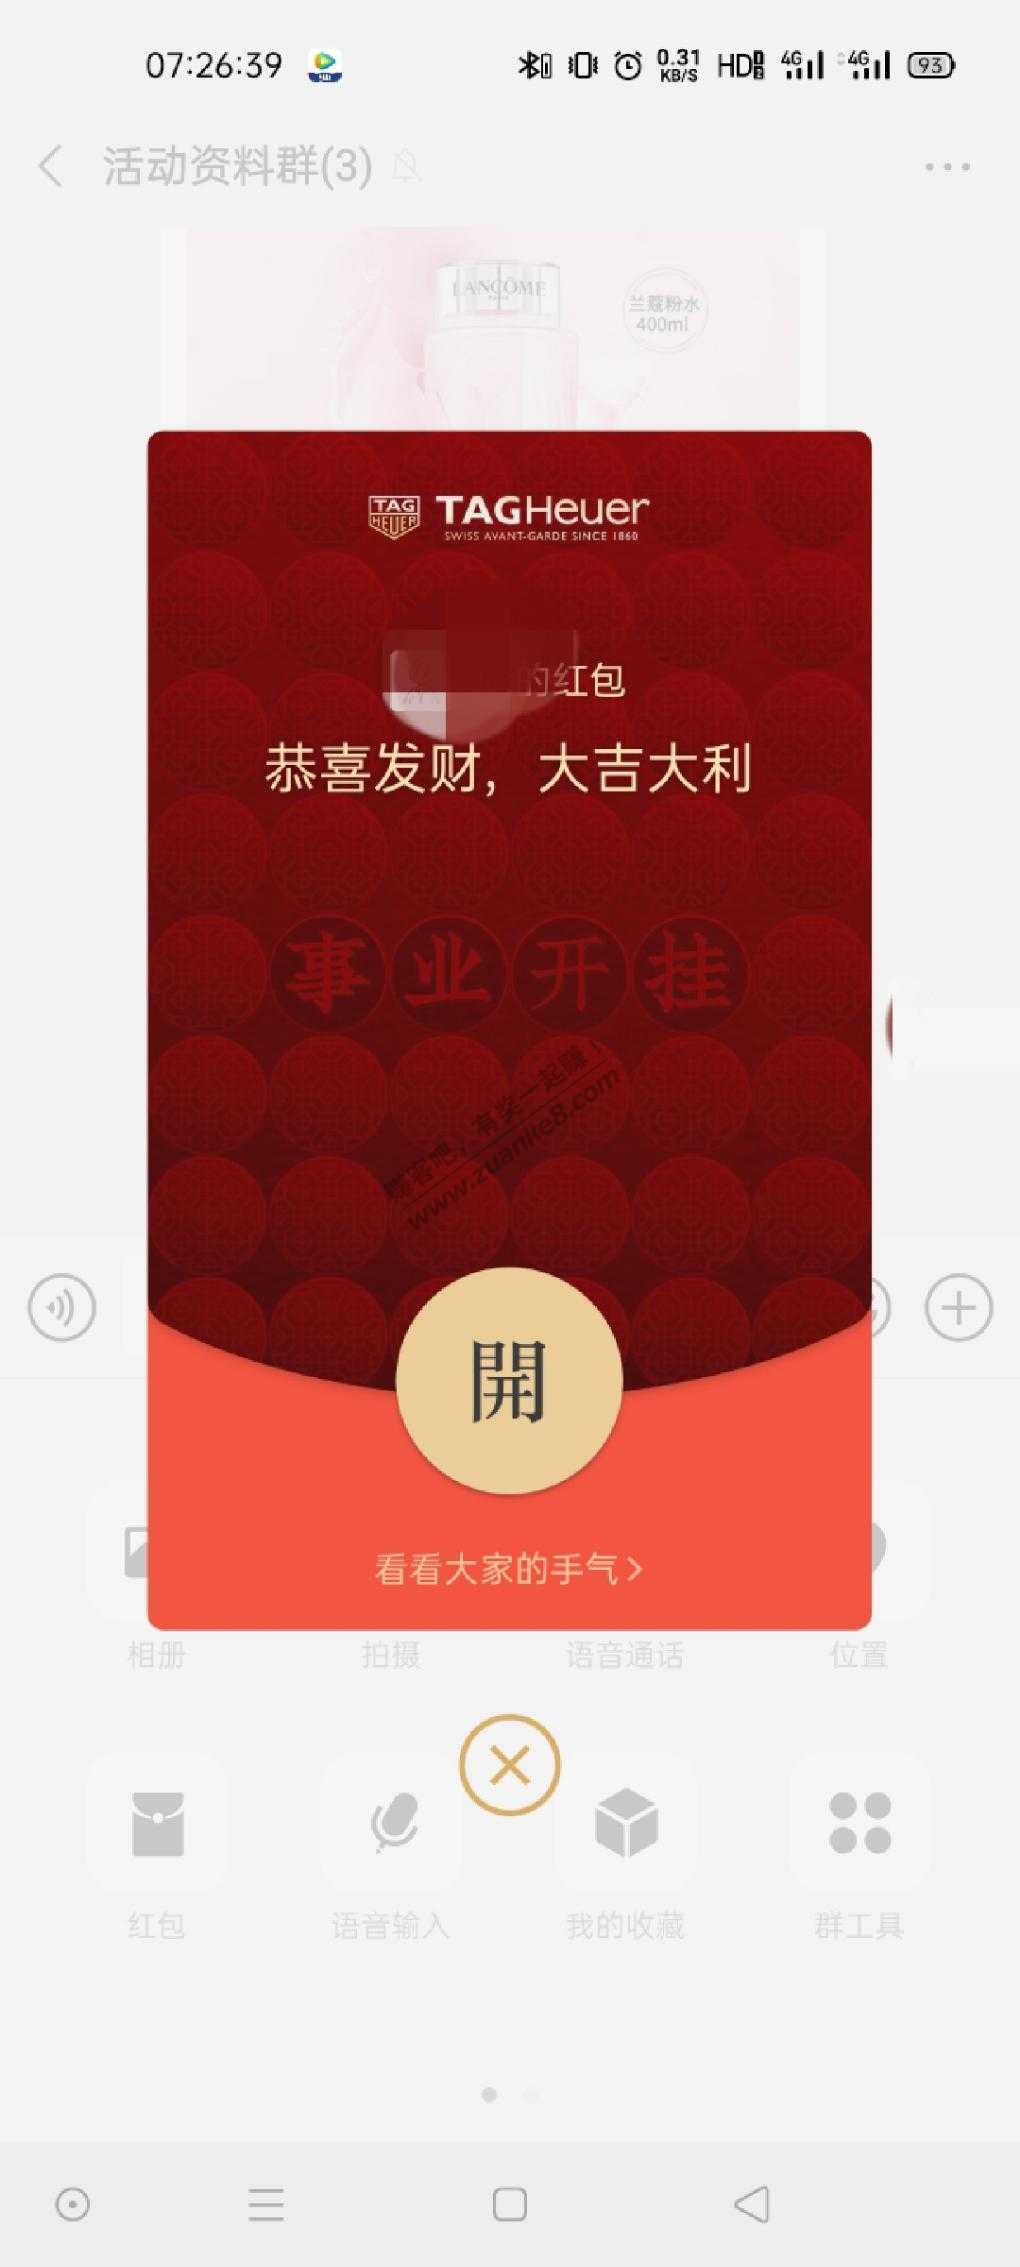 超级有寓意的红包封面-惠小助(52huixz.com)